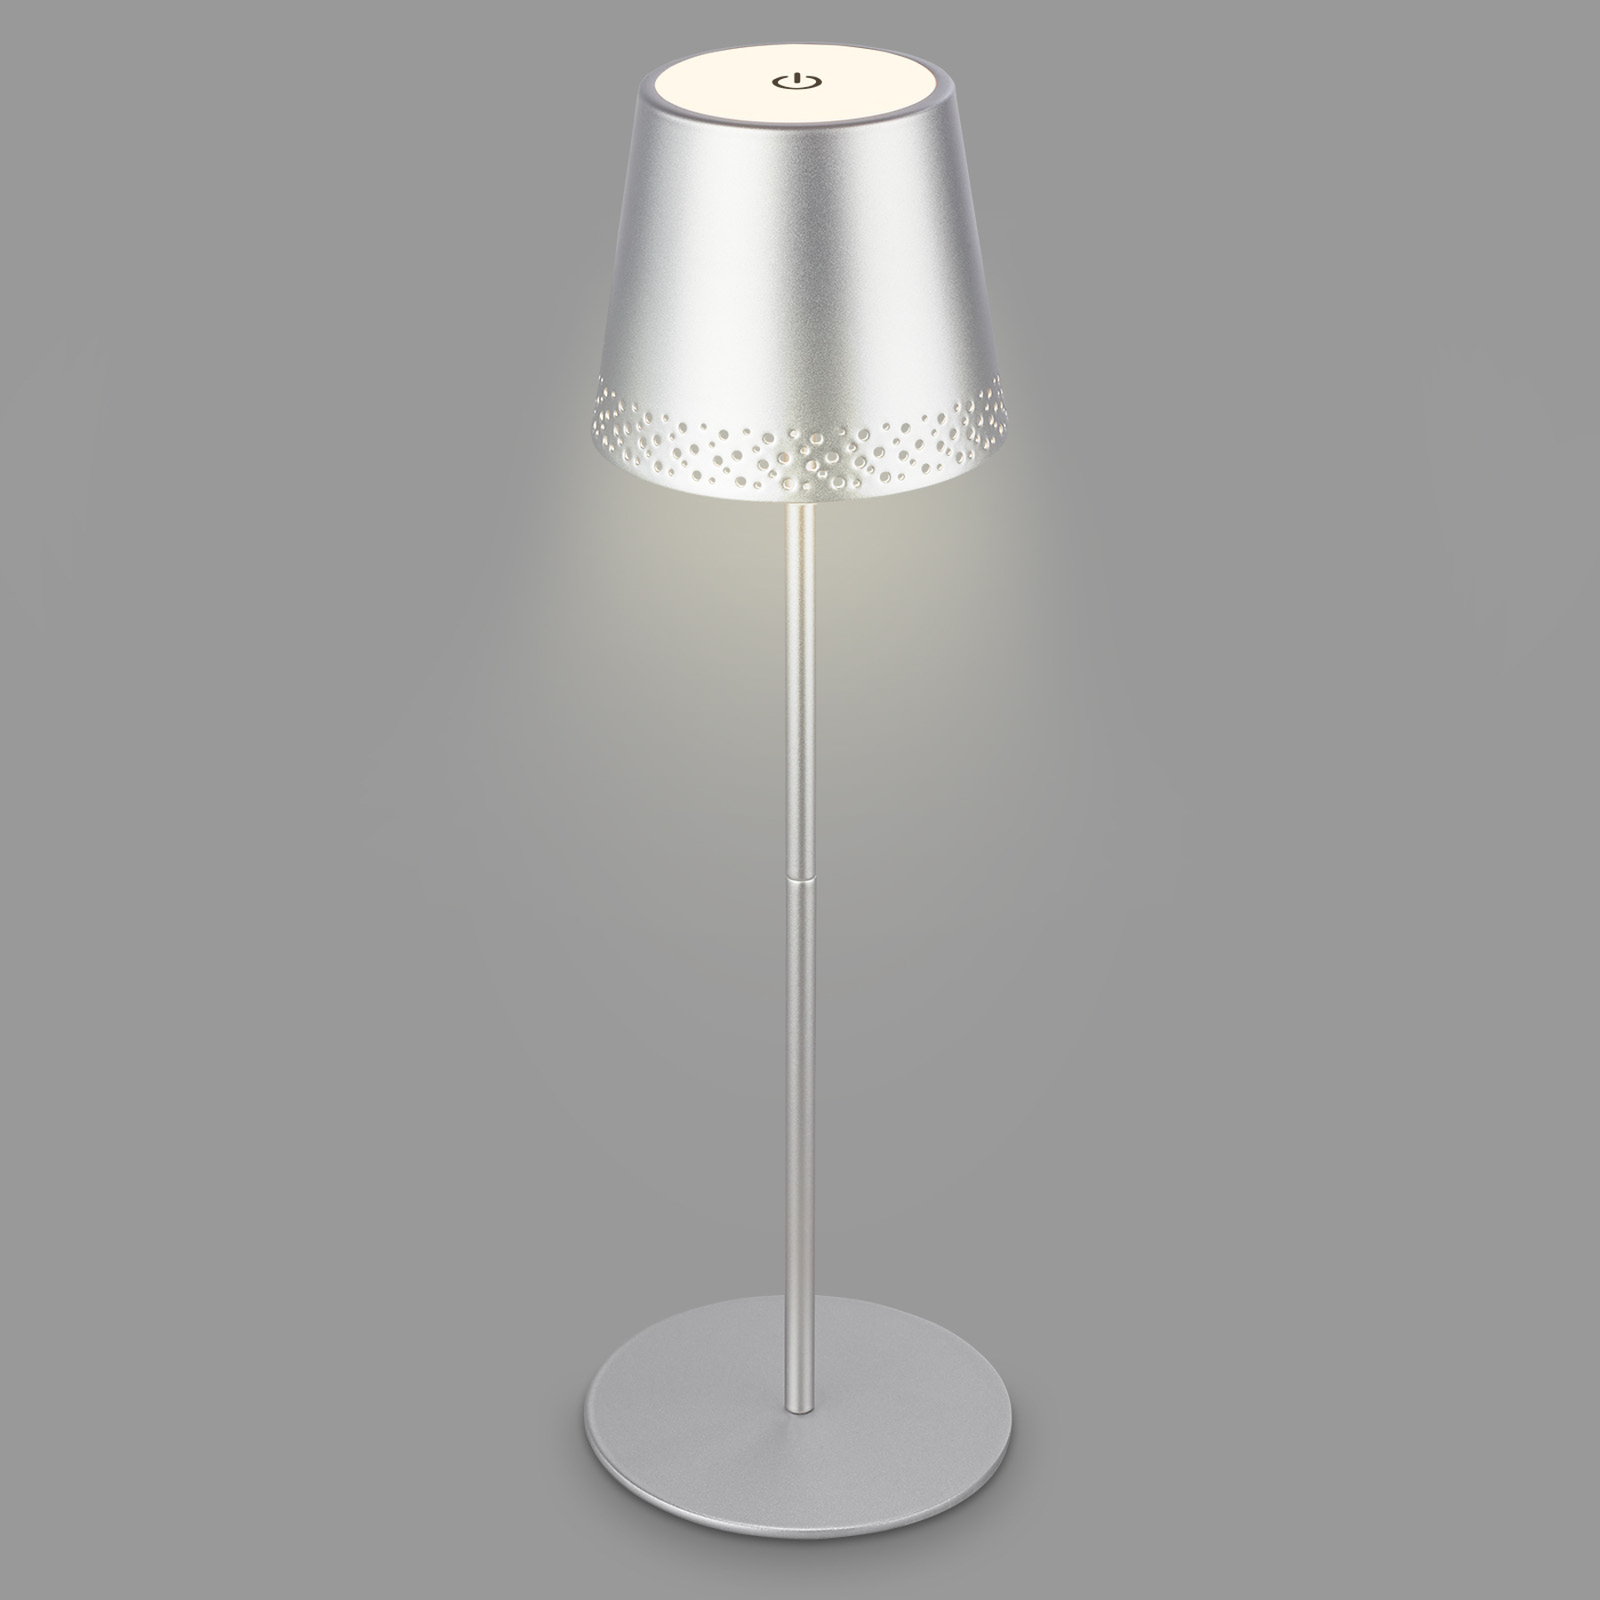 LED stolní lampa Kiki s baterií 3000K, matný chrom